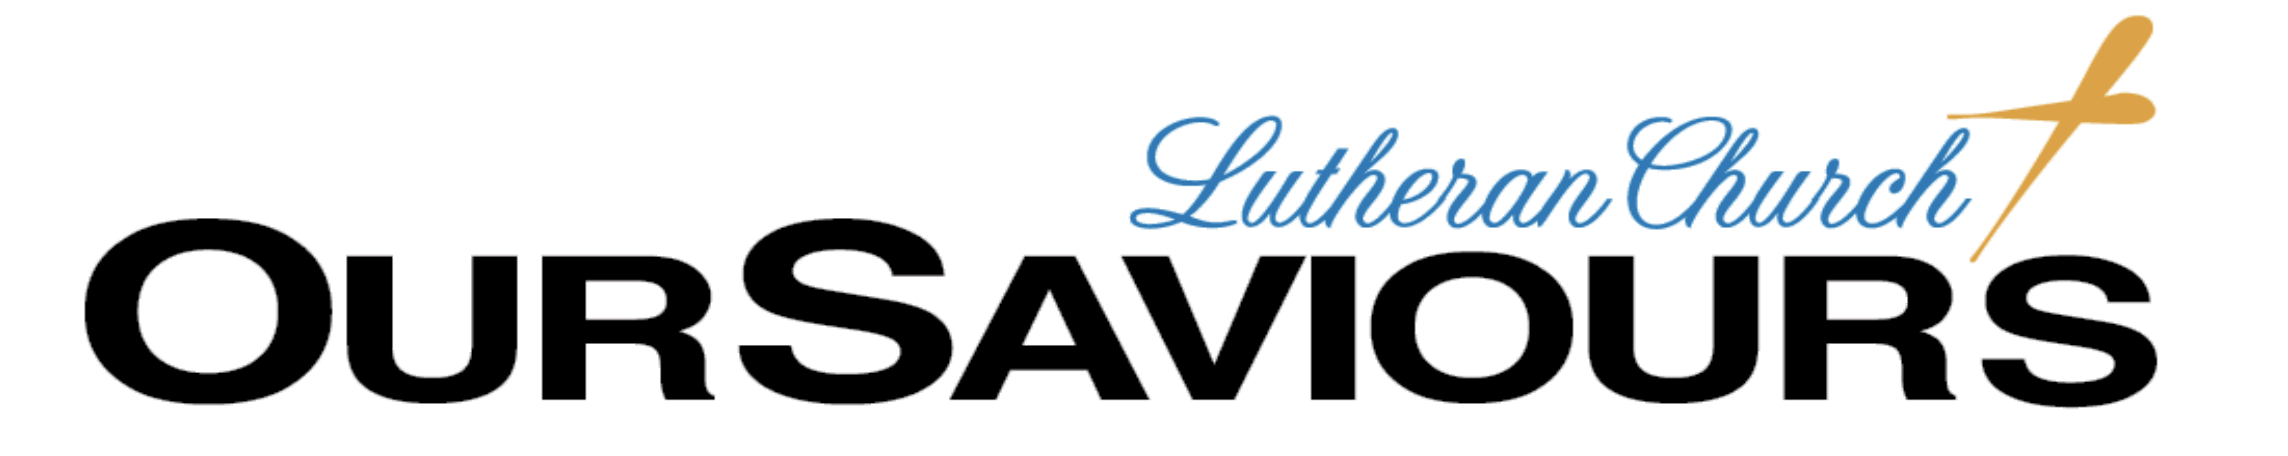 Our Saviours Lutheran Church